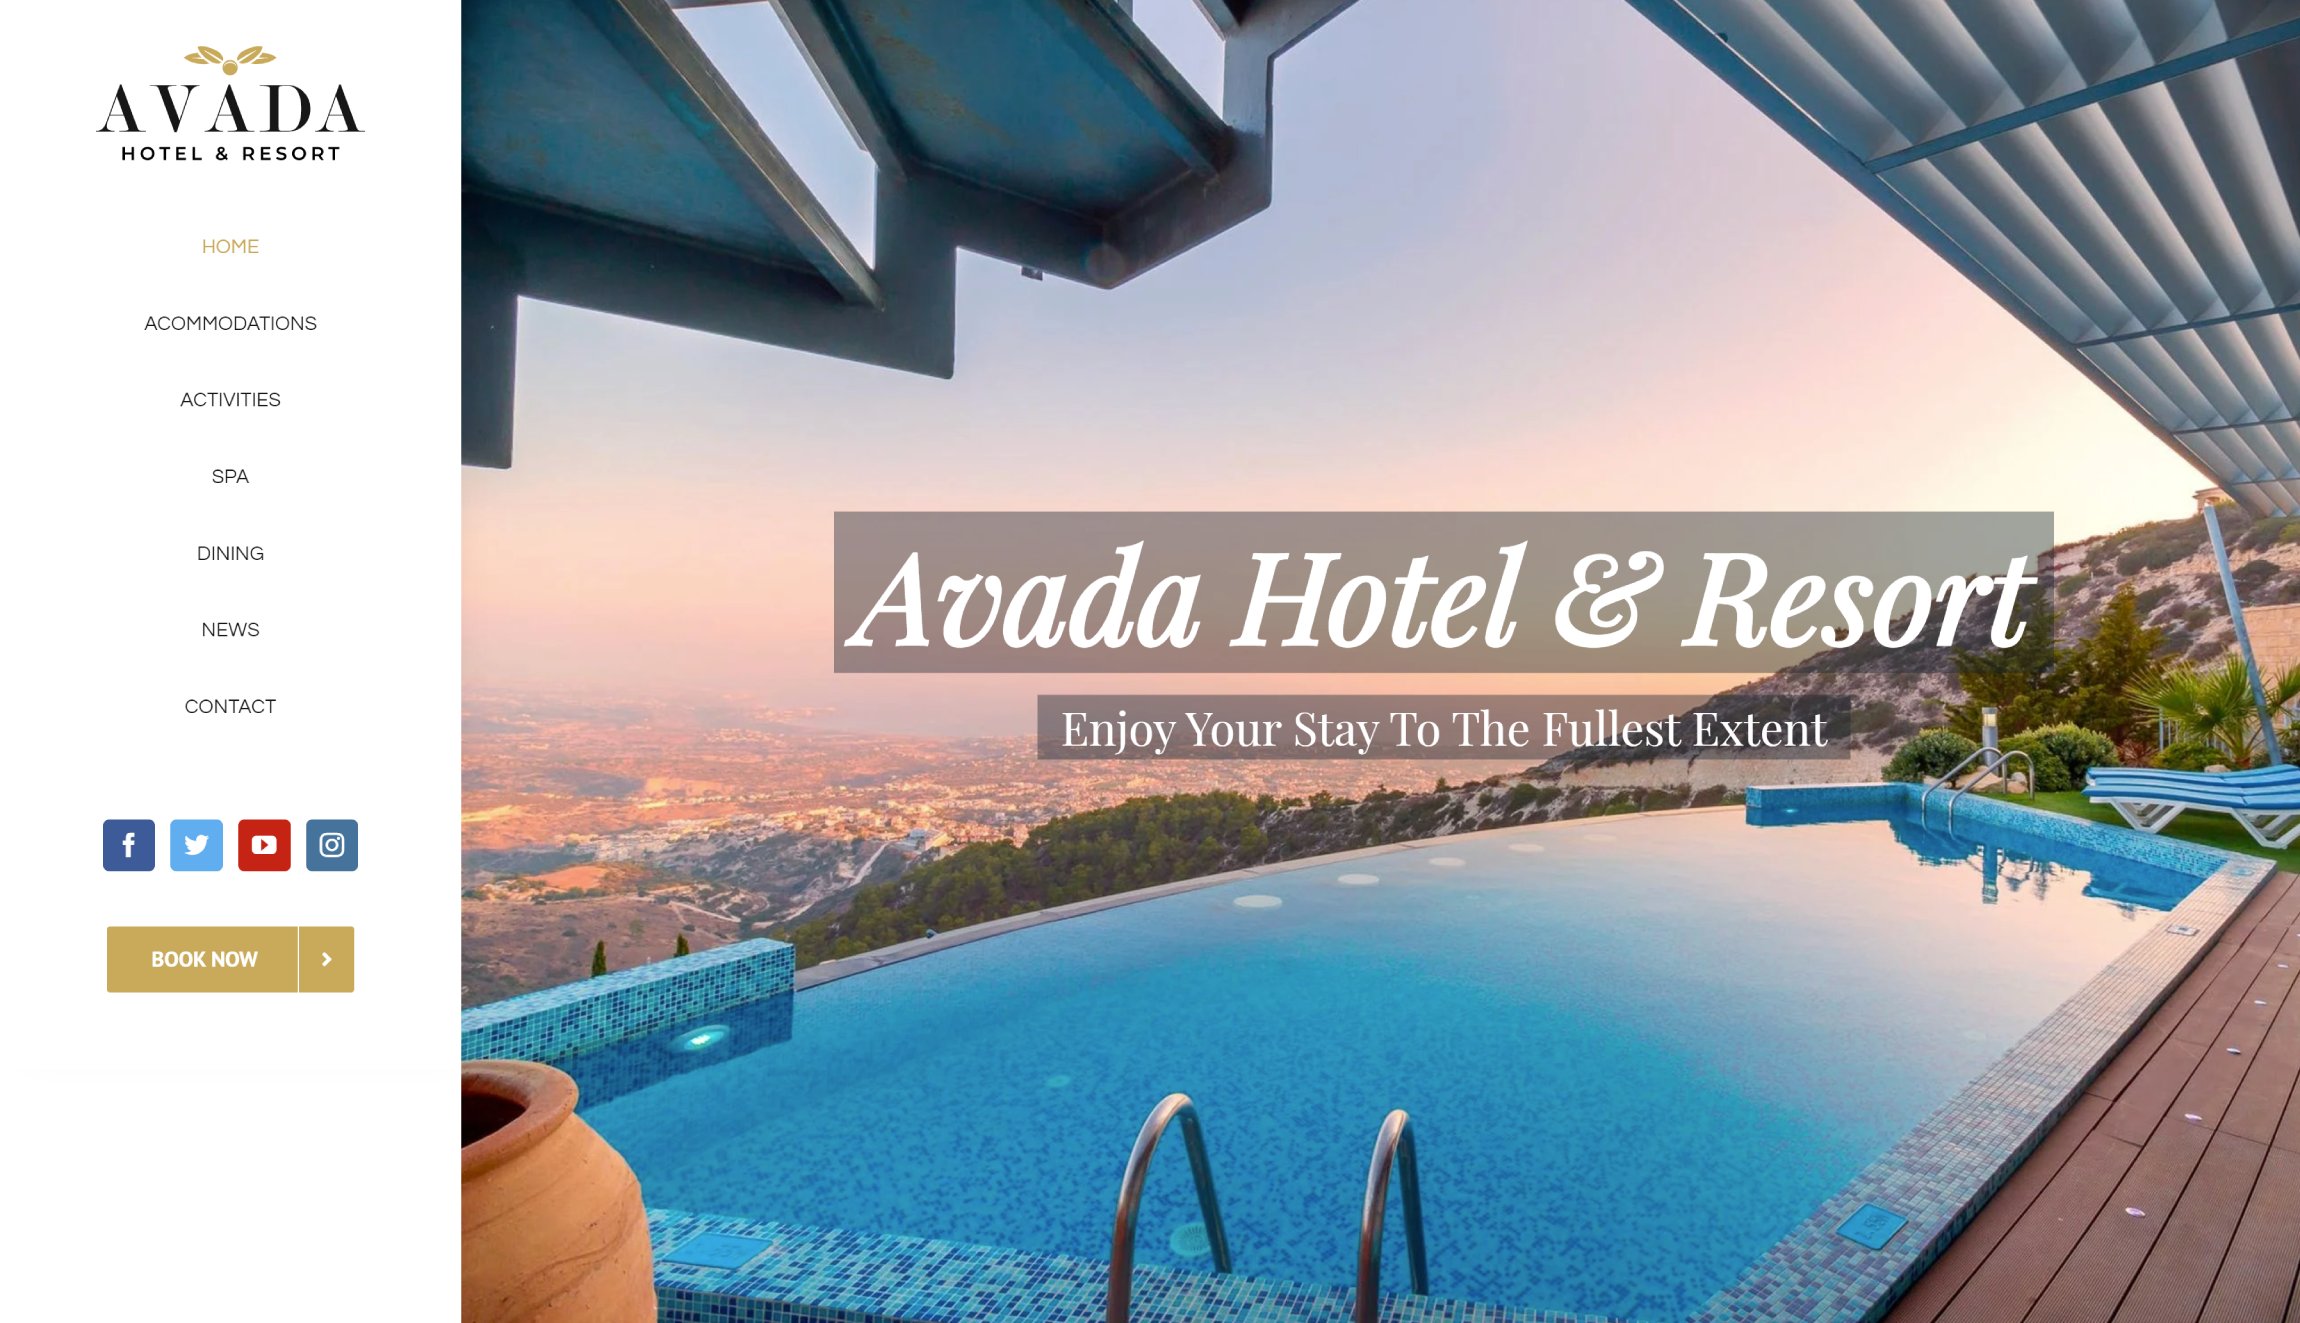 Avada Hotel & Resort